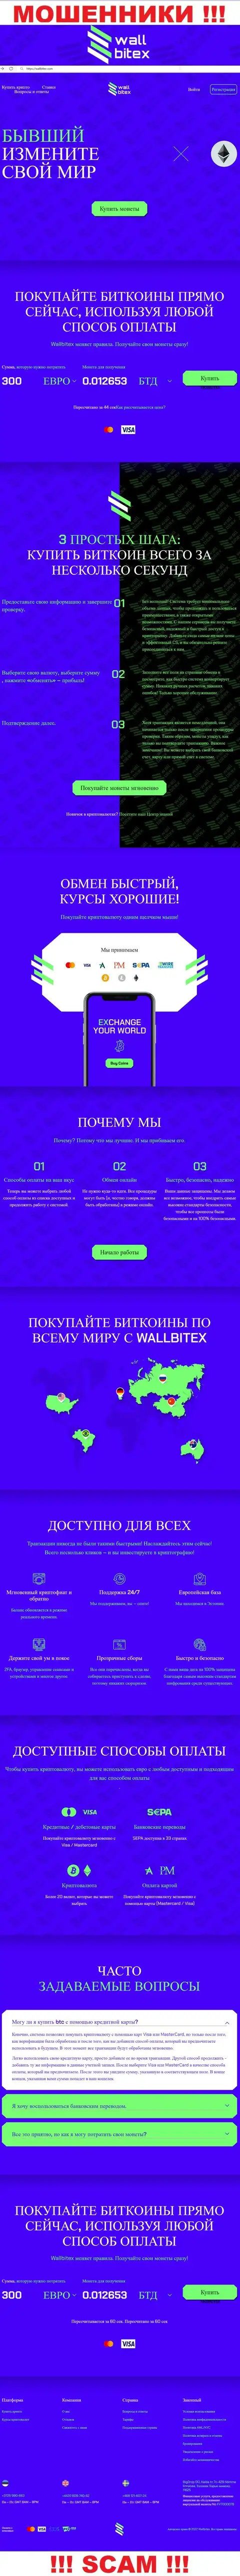 WallBitex Com - это официальный ресурс жульнической организации WallBitex Com